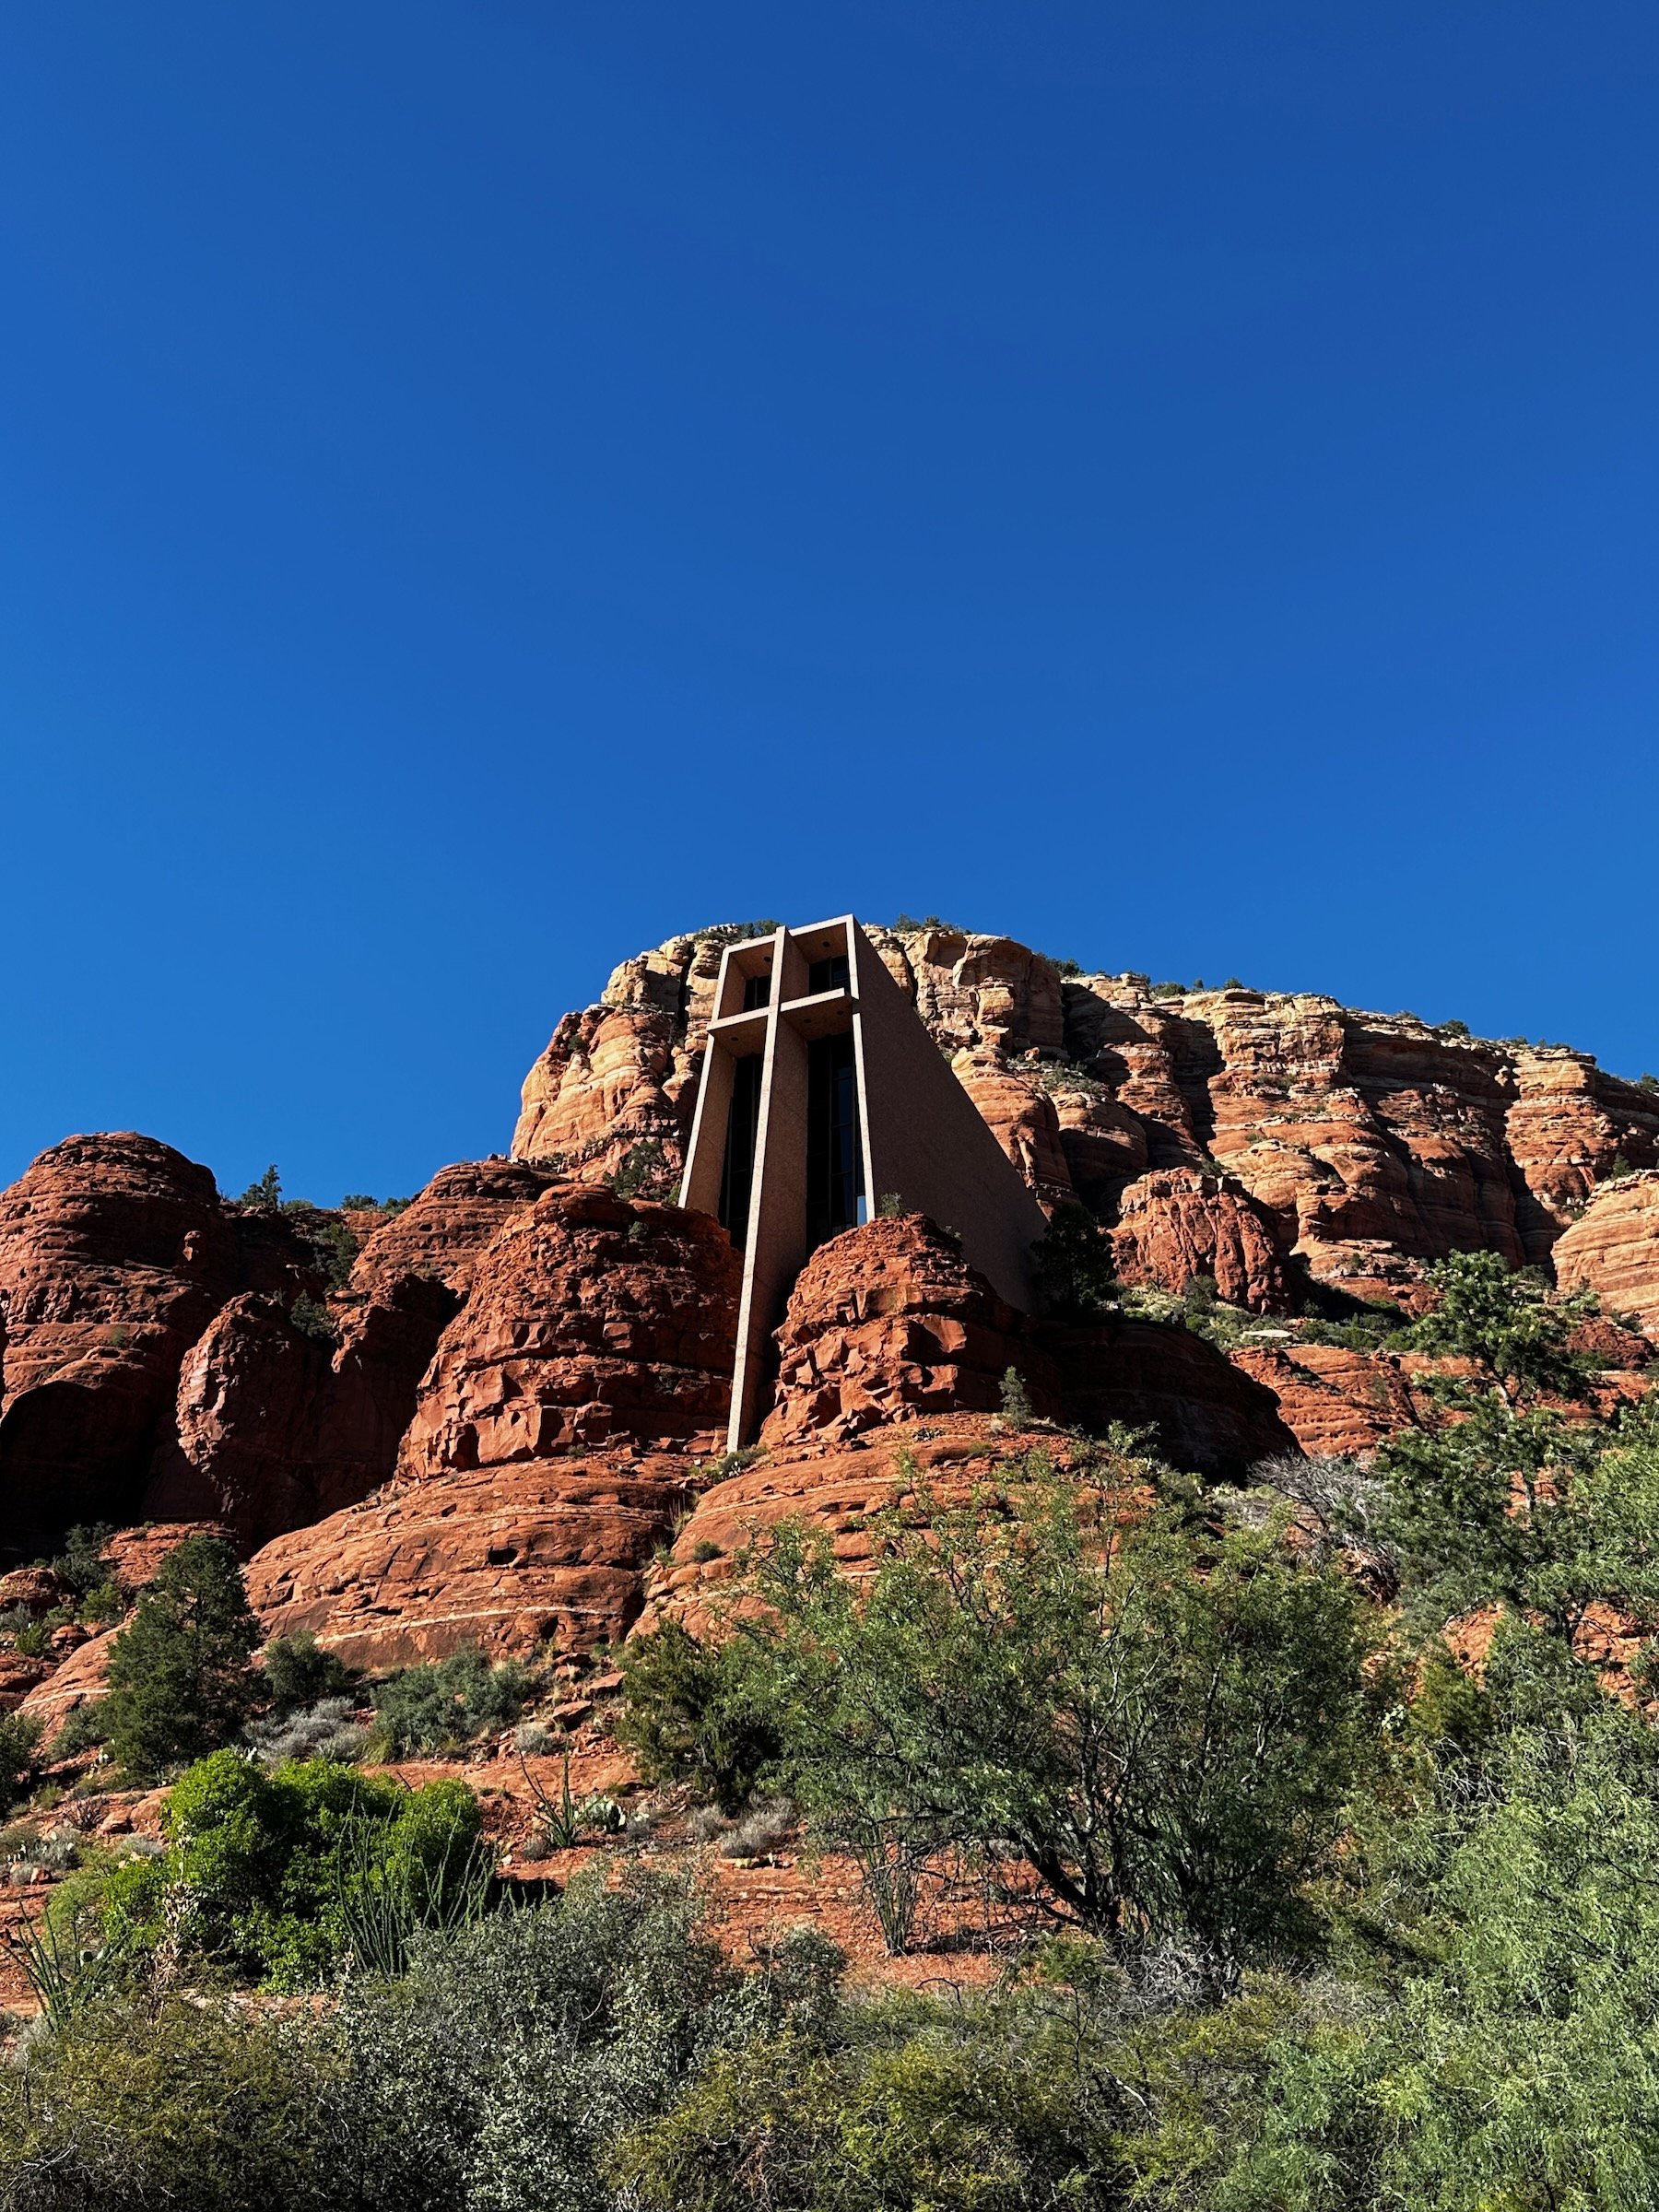  Chapel of the Holy Cross - Sedona, Arizona 